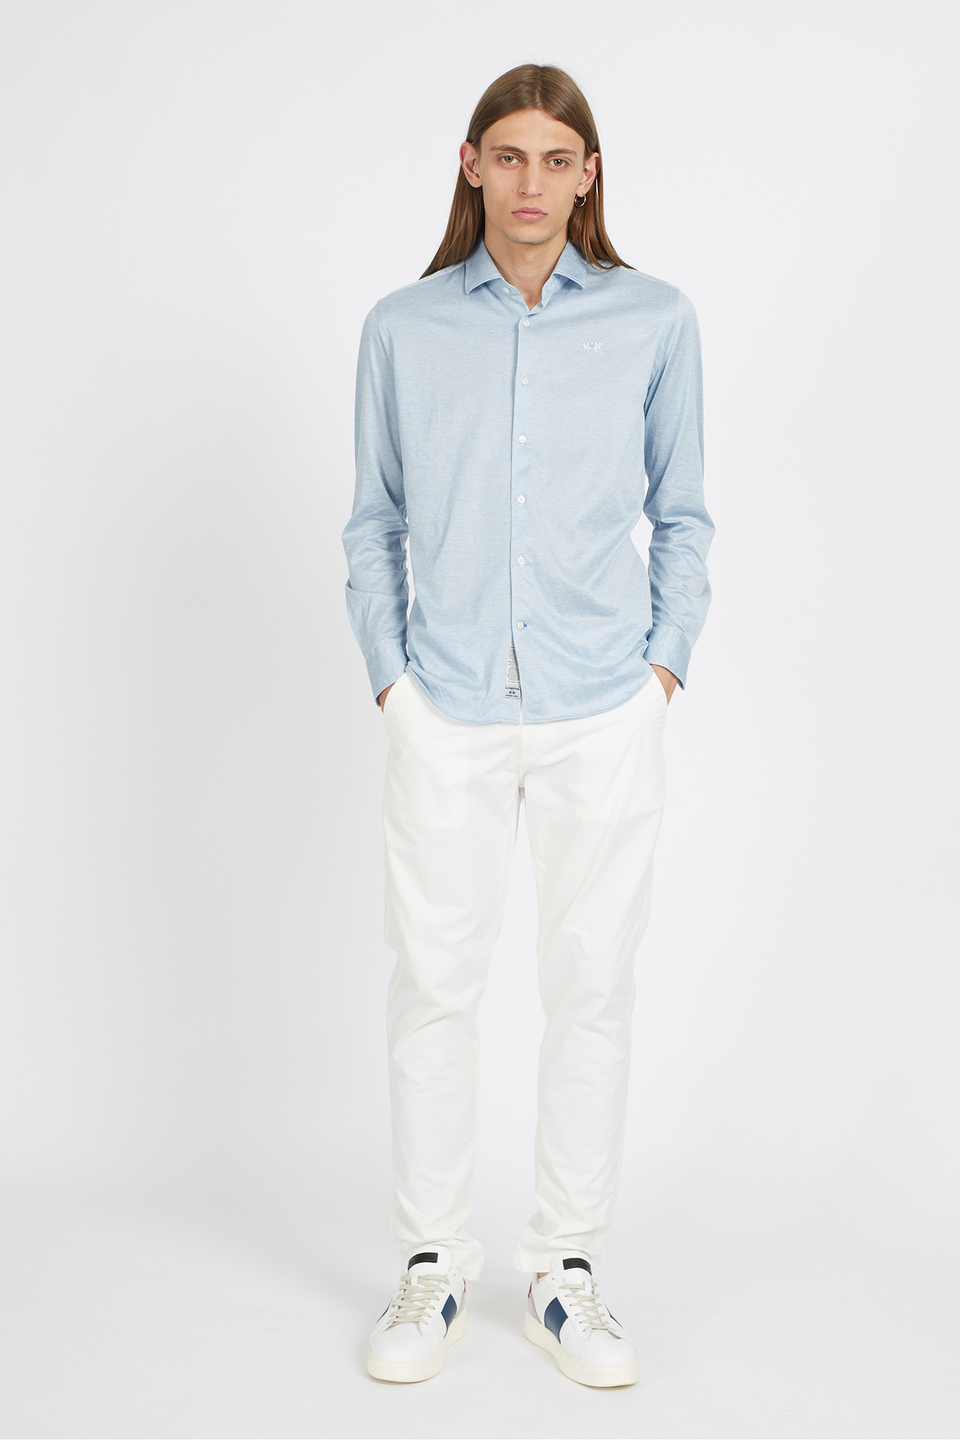 Camicia da uomo in cotone misto seta maniche lunghe custom fit - Qalam | La Martina - Official Online Shop